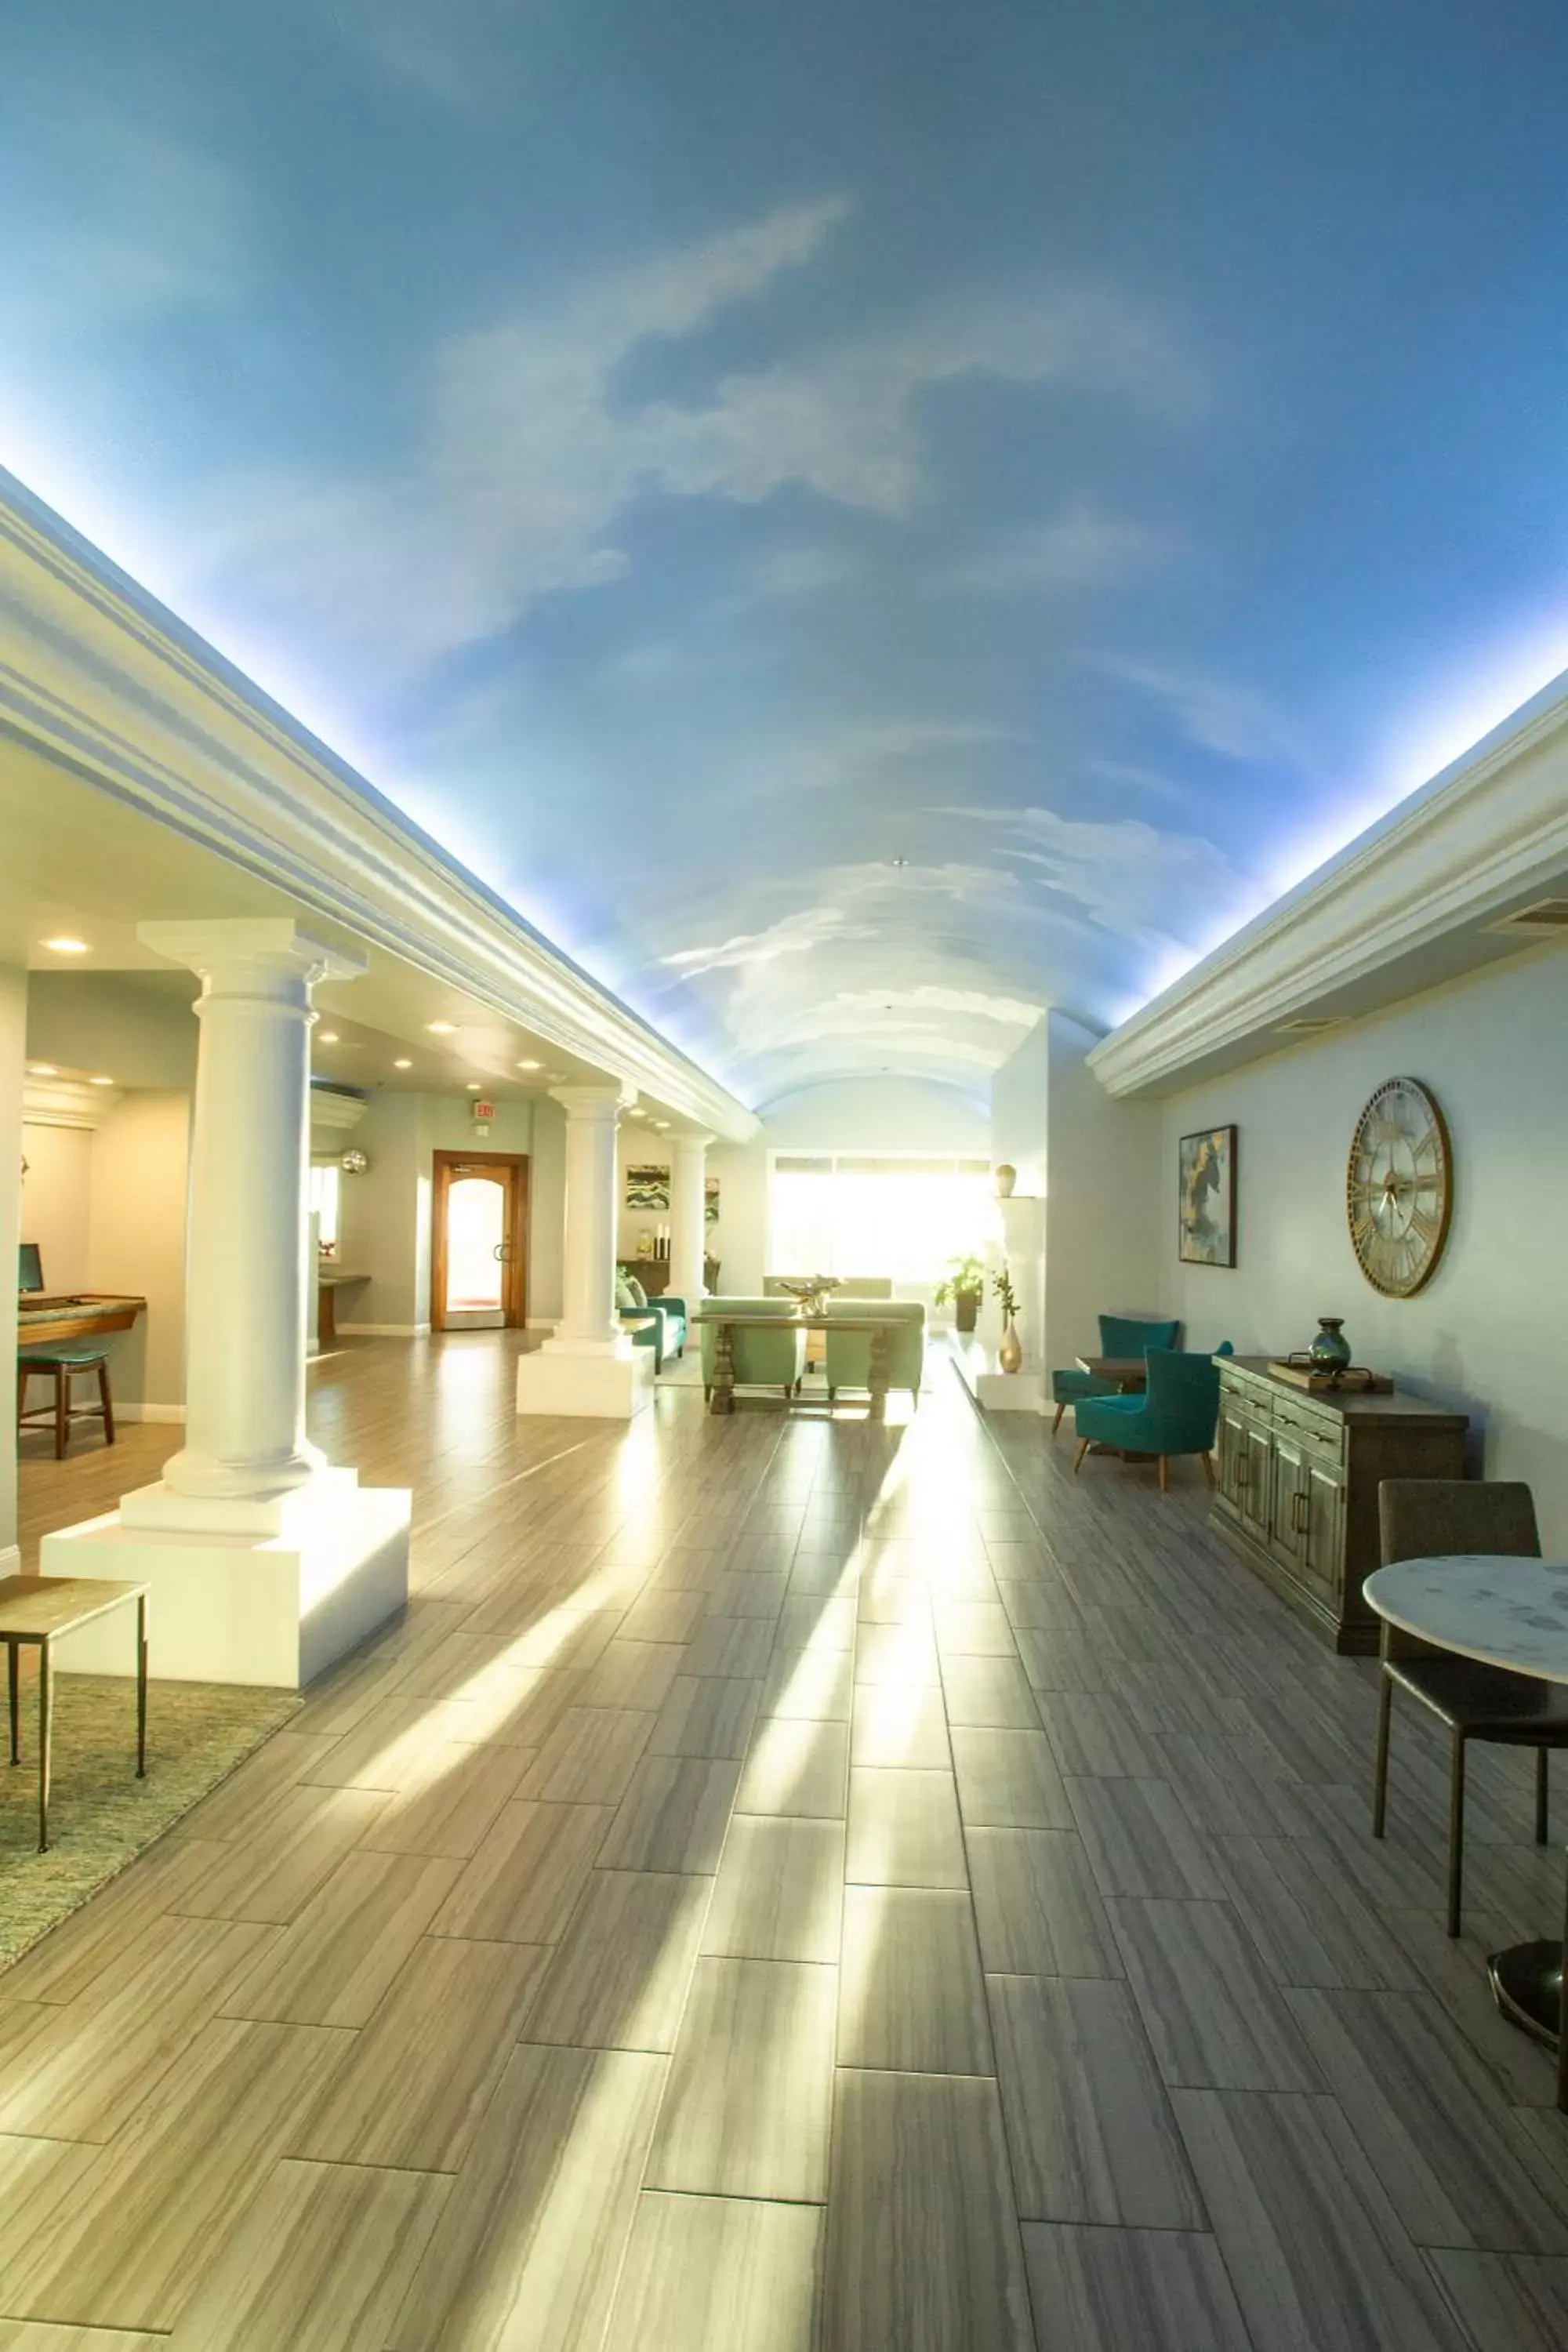 Lobby or reception, Lobby/Reception in Tamarack Beach Hotel